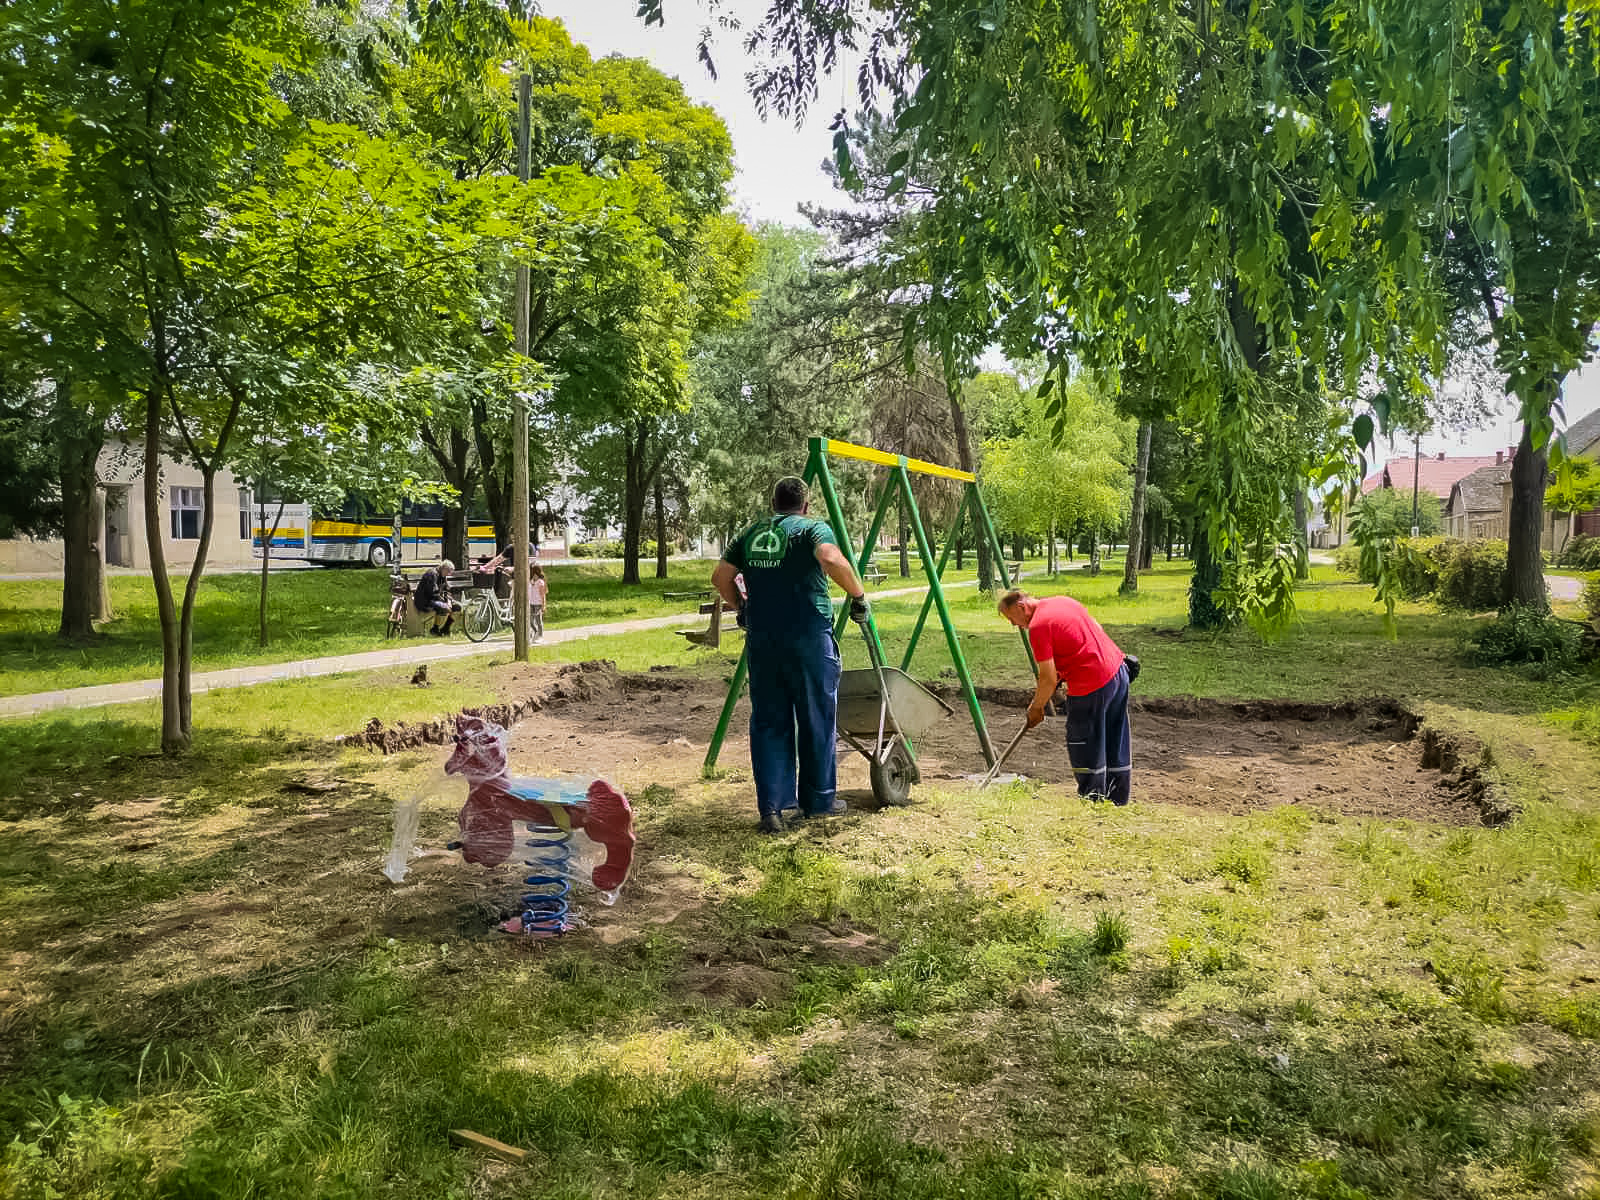 Postavljanje dečijeg igrališta - JKP "Zelenilo"